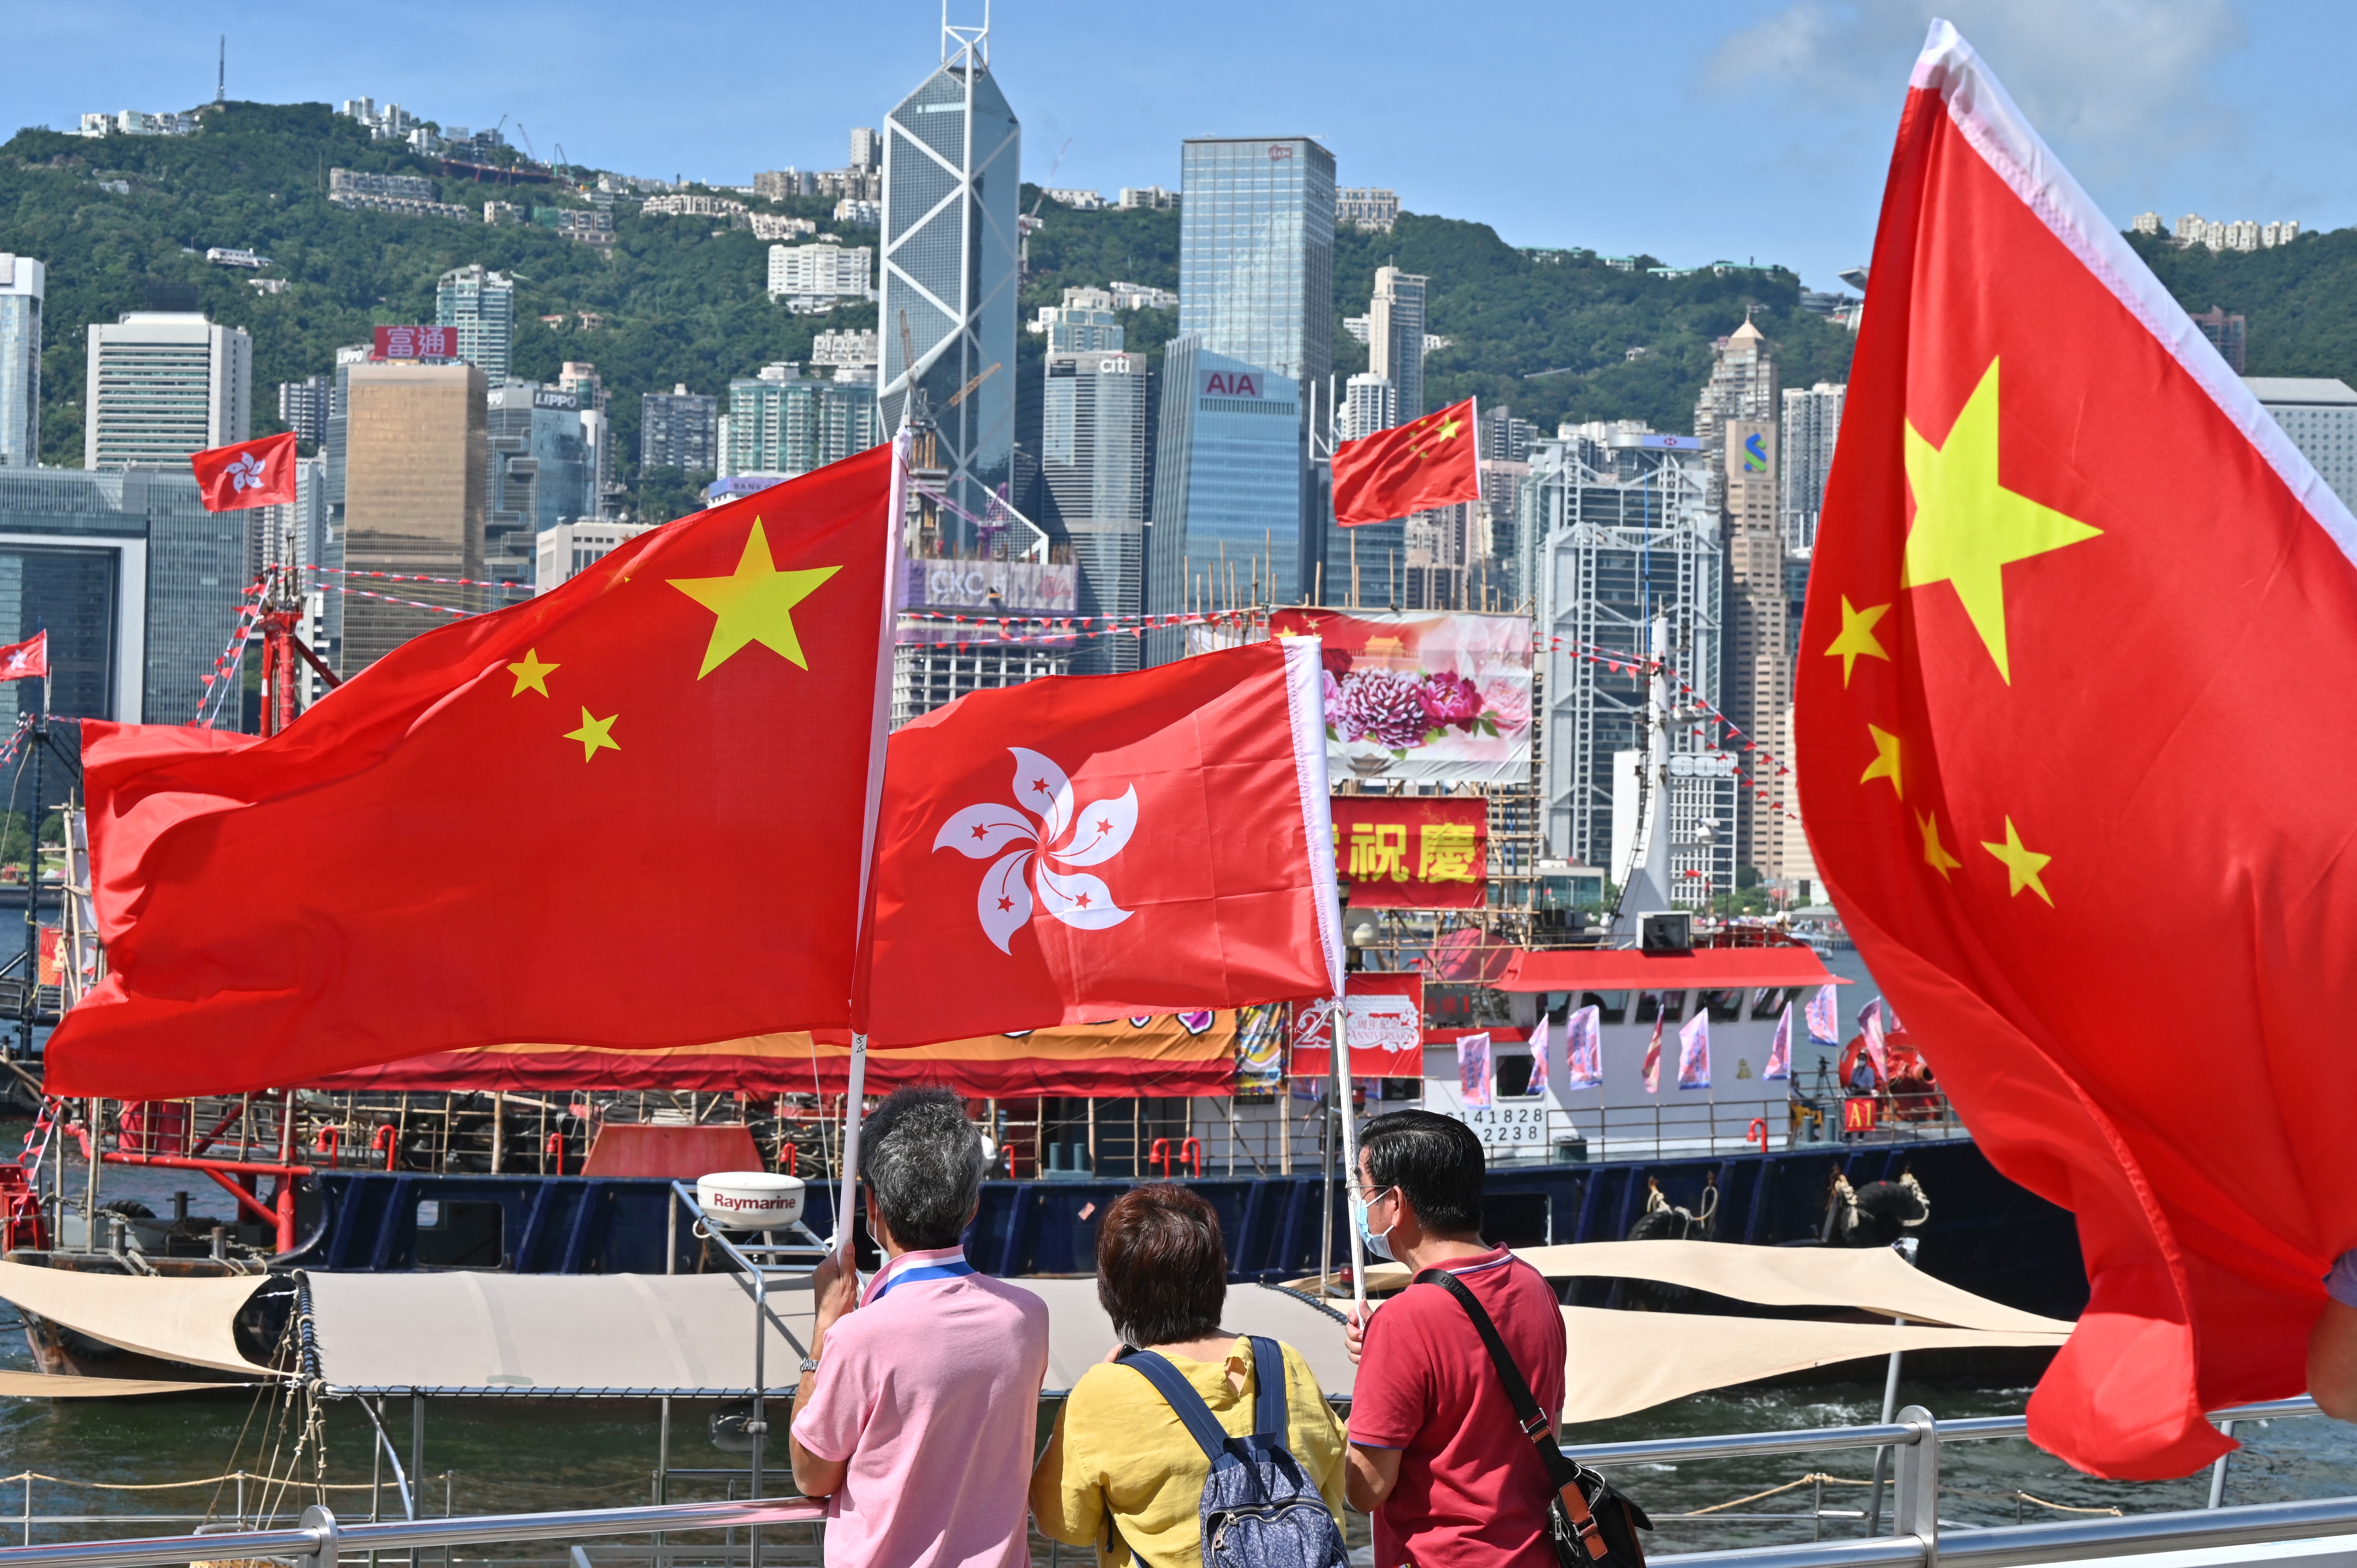 Hồng Kông về Trung Quốc: Tình trạng phản đối cờ Trung Quốc liên quan tới Hồng Kông vẫn đang diễn ra. Người dân Hồng Kông vẫn không chấp nhận việc quyết định này và đã tổ chức hàng loạt cuộc biểu tình trong và ngoài nước. Tuy nhiên, nhờ sự can thiệp của cộng đồng quốc tế, tình hình này đang có những tín hiệu tích cực. Chính phủ Trung Quốc cũng đã có những nỗ lực để giải quyết các vấn đề phát sinh liên quan đến việc Hồng Kông trở về chủ quyền của Trung Quốc.